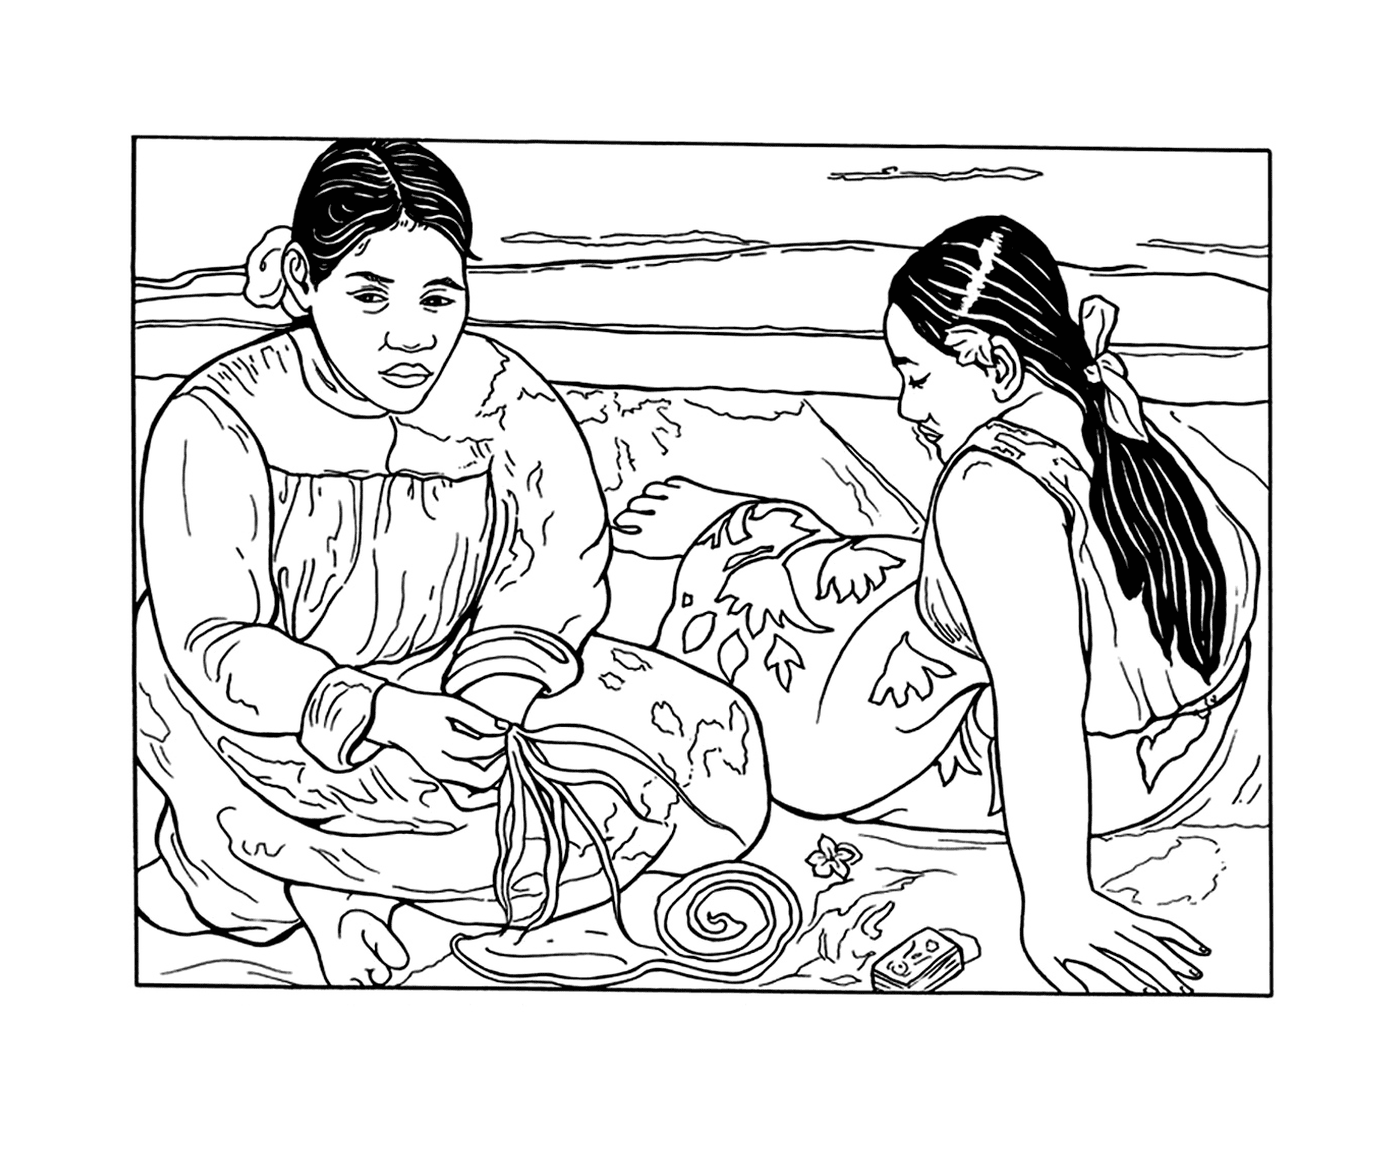  समुद्र तट पर एक चादर पर बैठे दो औरतें 